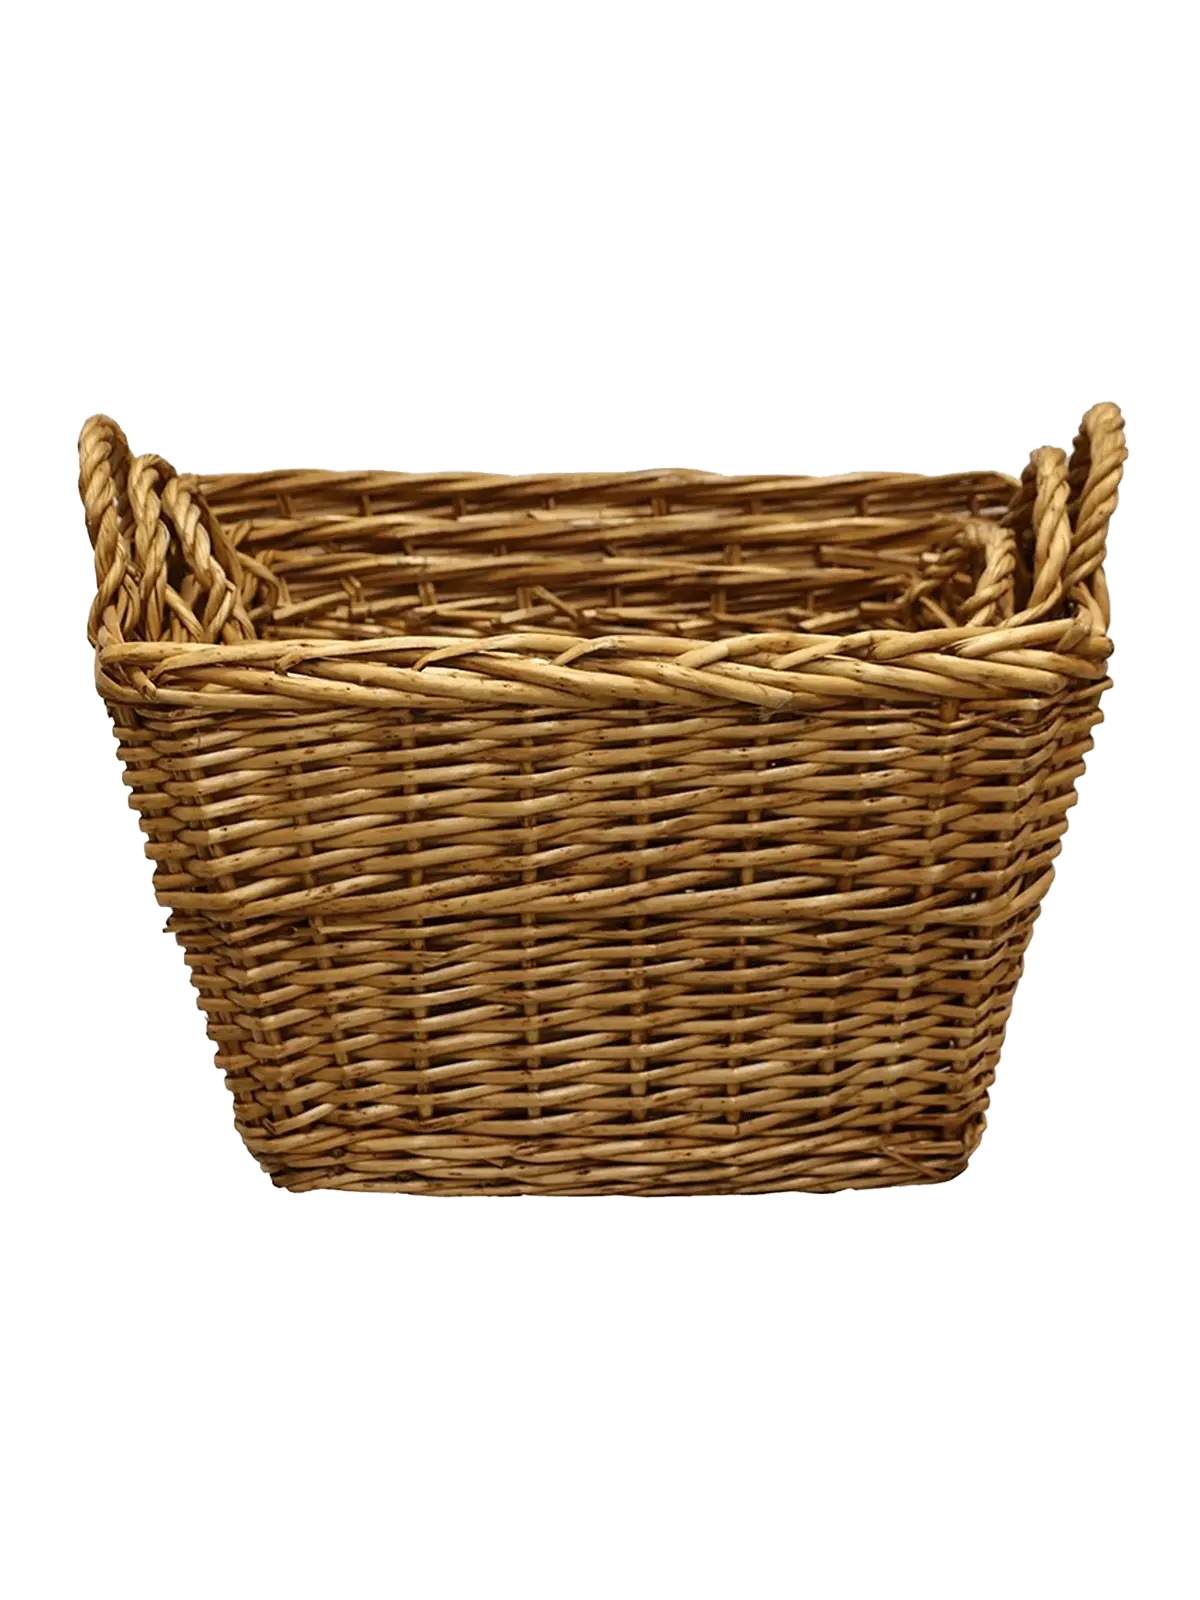 Willow Wood Baskets Rectangular | Set of 3 CC Interiors